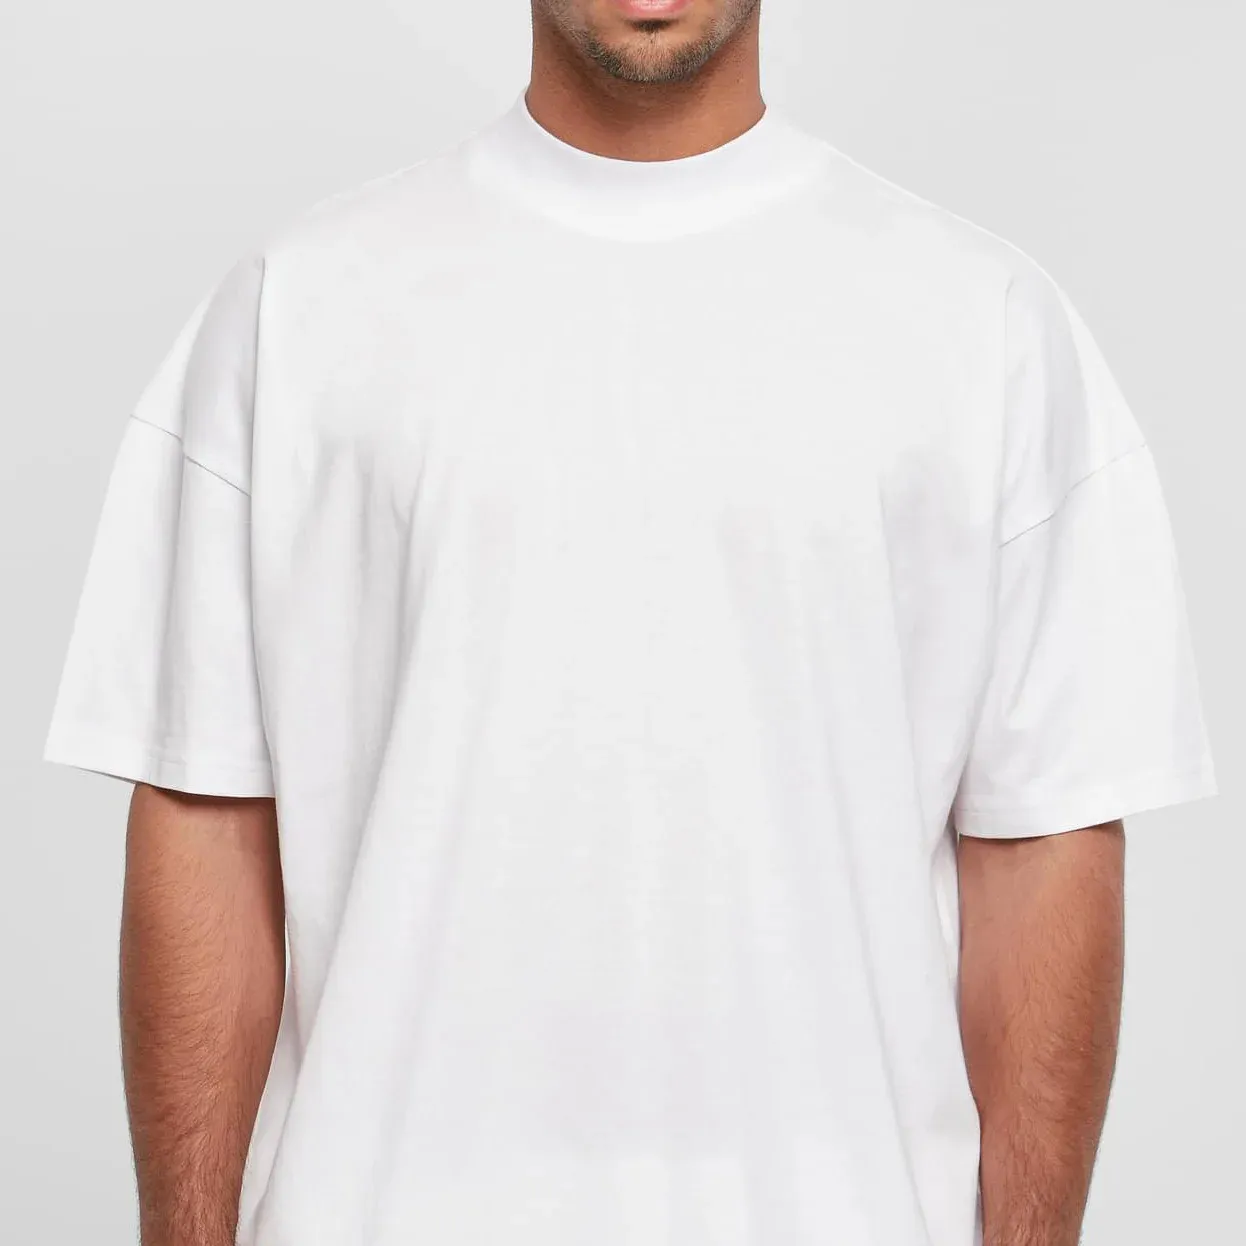 Top calidad italiana nuevo estilo tu propia marca diseñador de moda camiseta hombres moda Blanc camiseta Casual Oversize camiseta